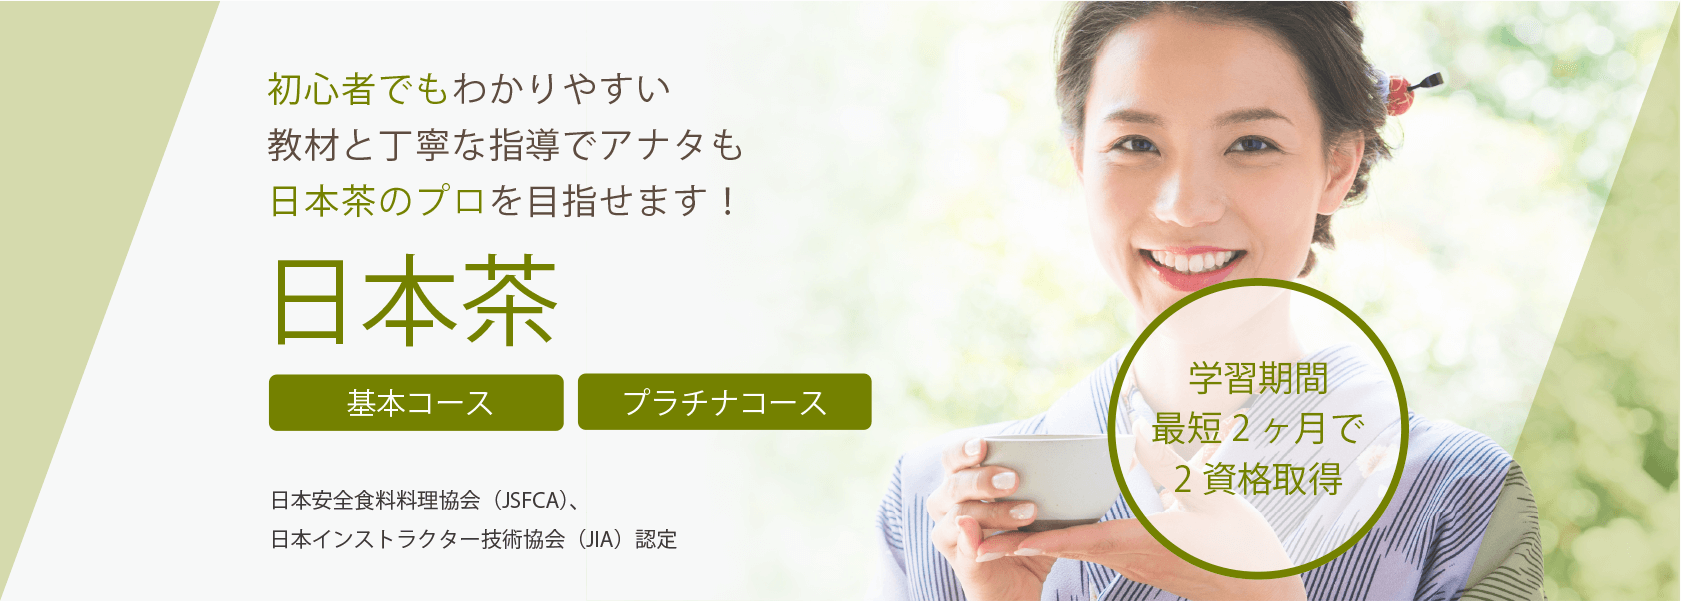 日本茶資格取得の通信教育講座